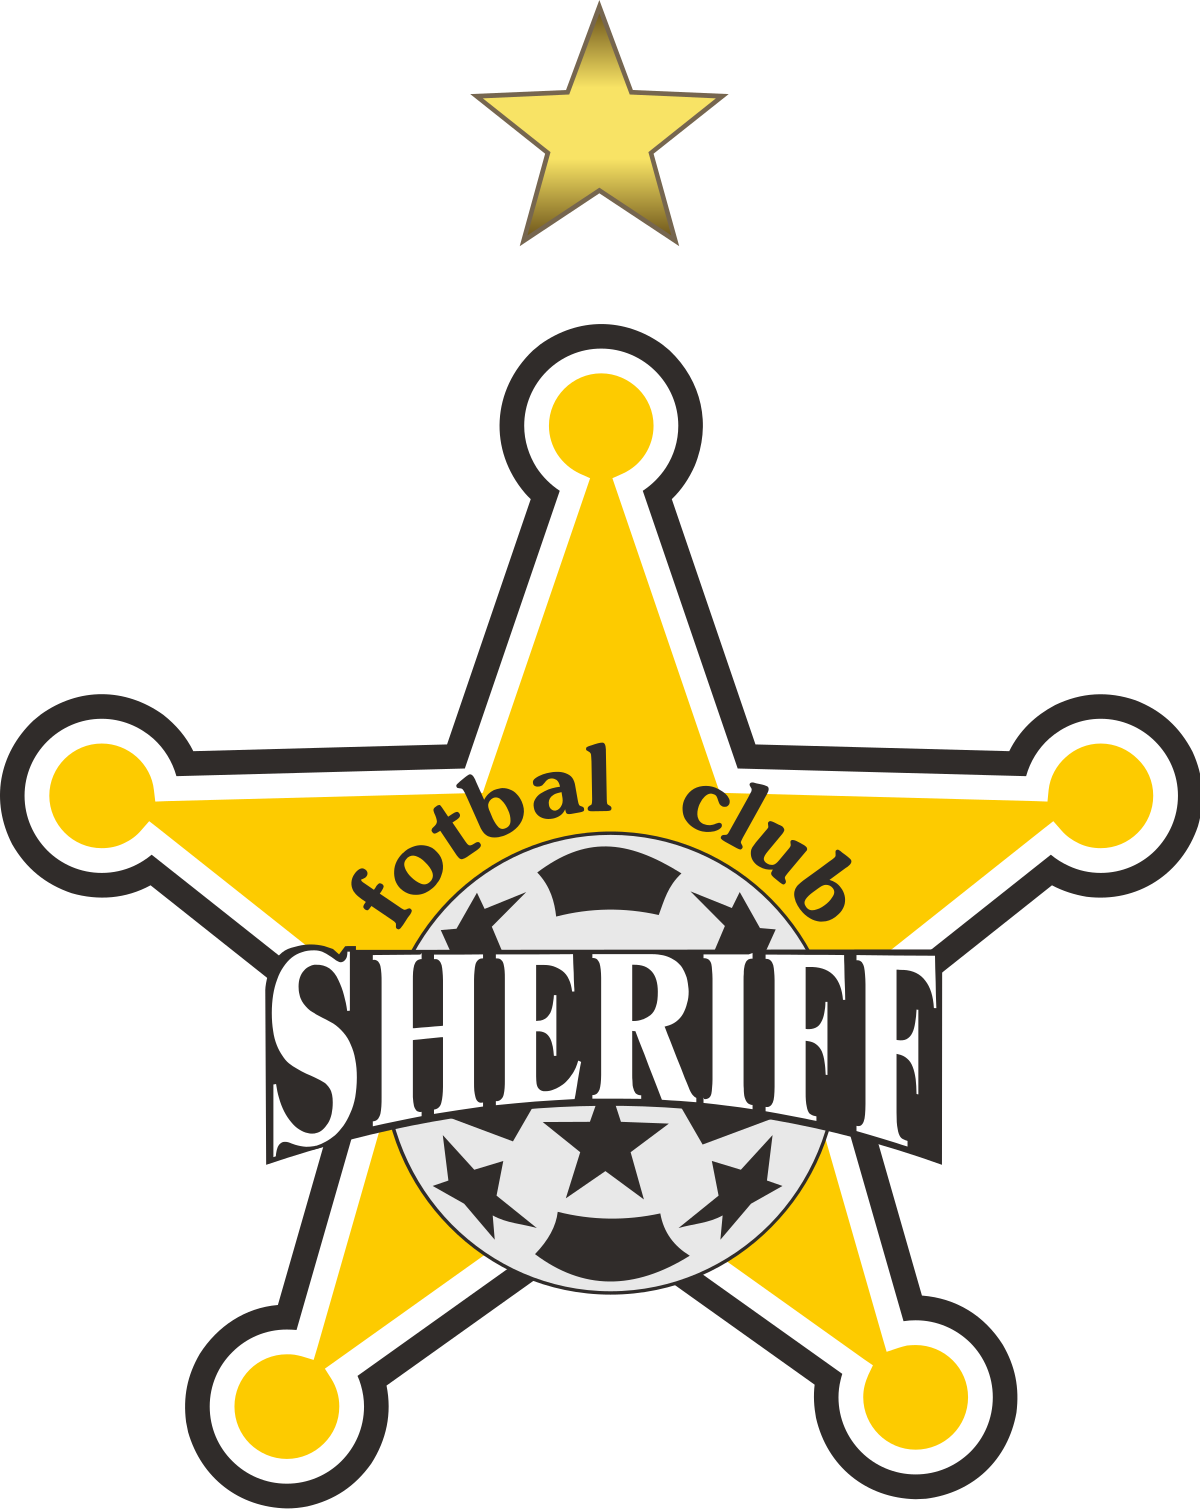 Sherif-2 logo